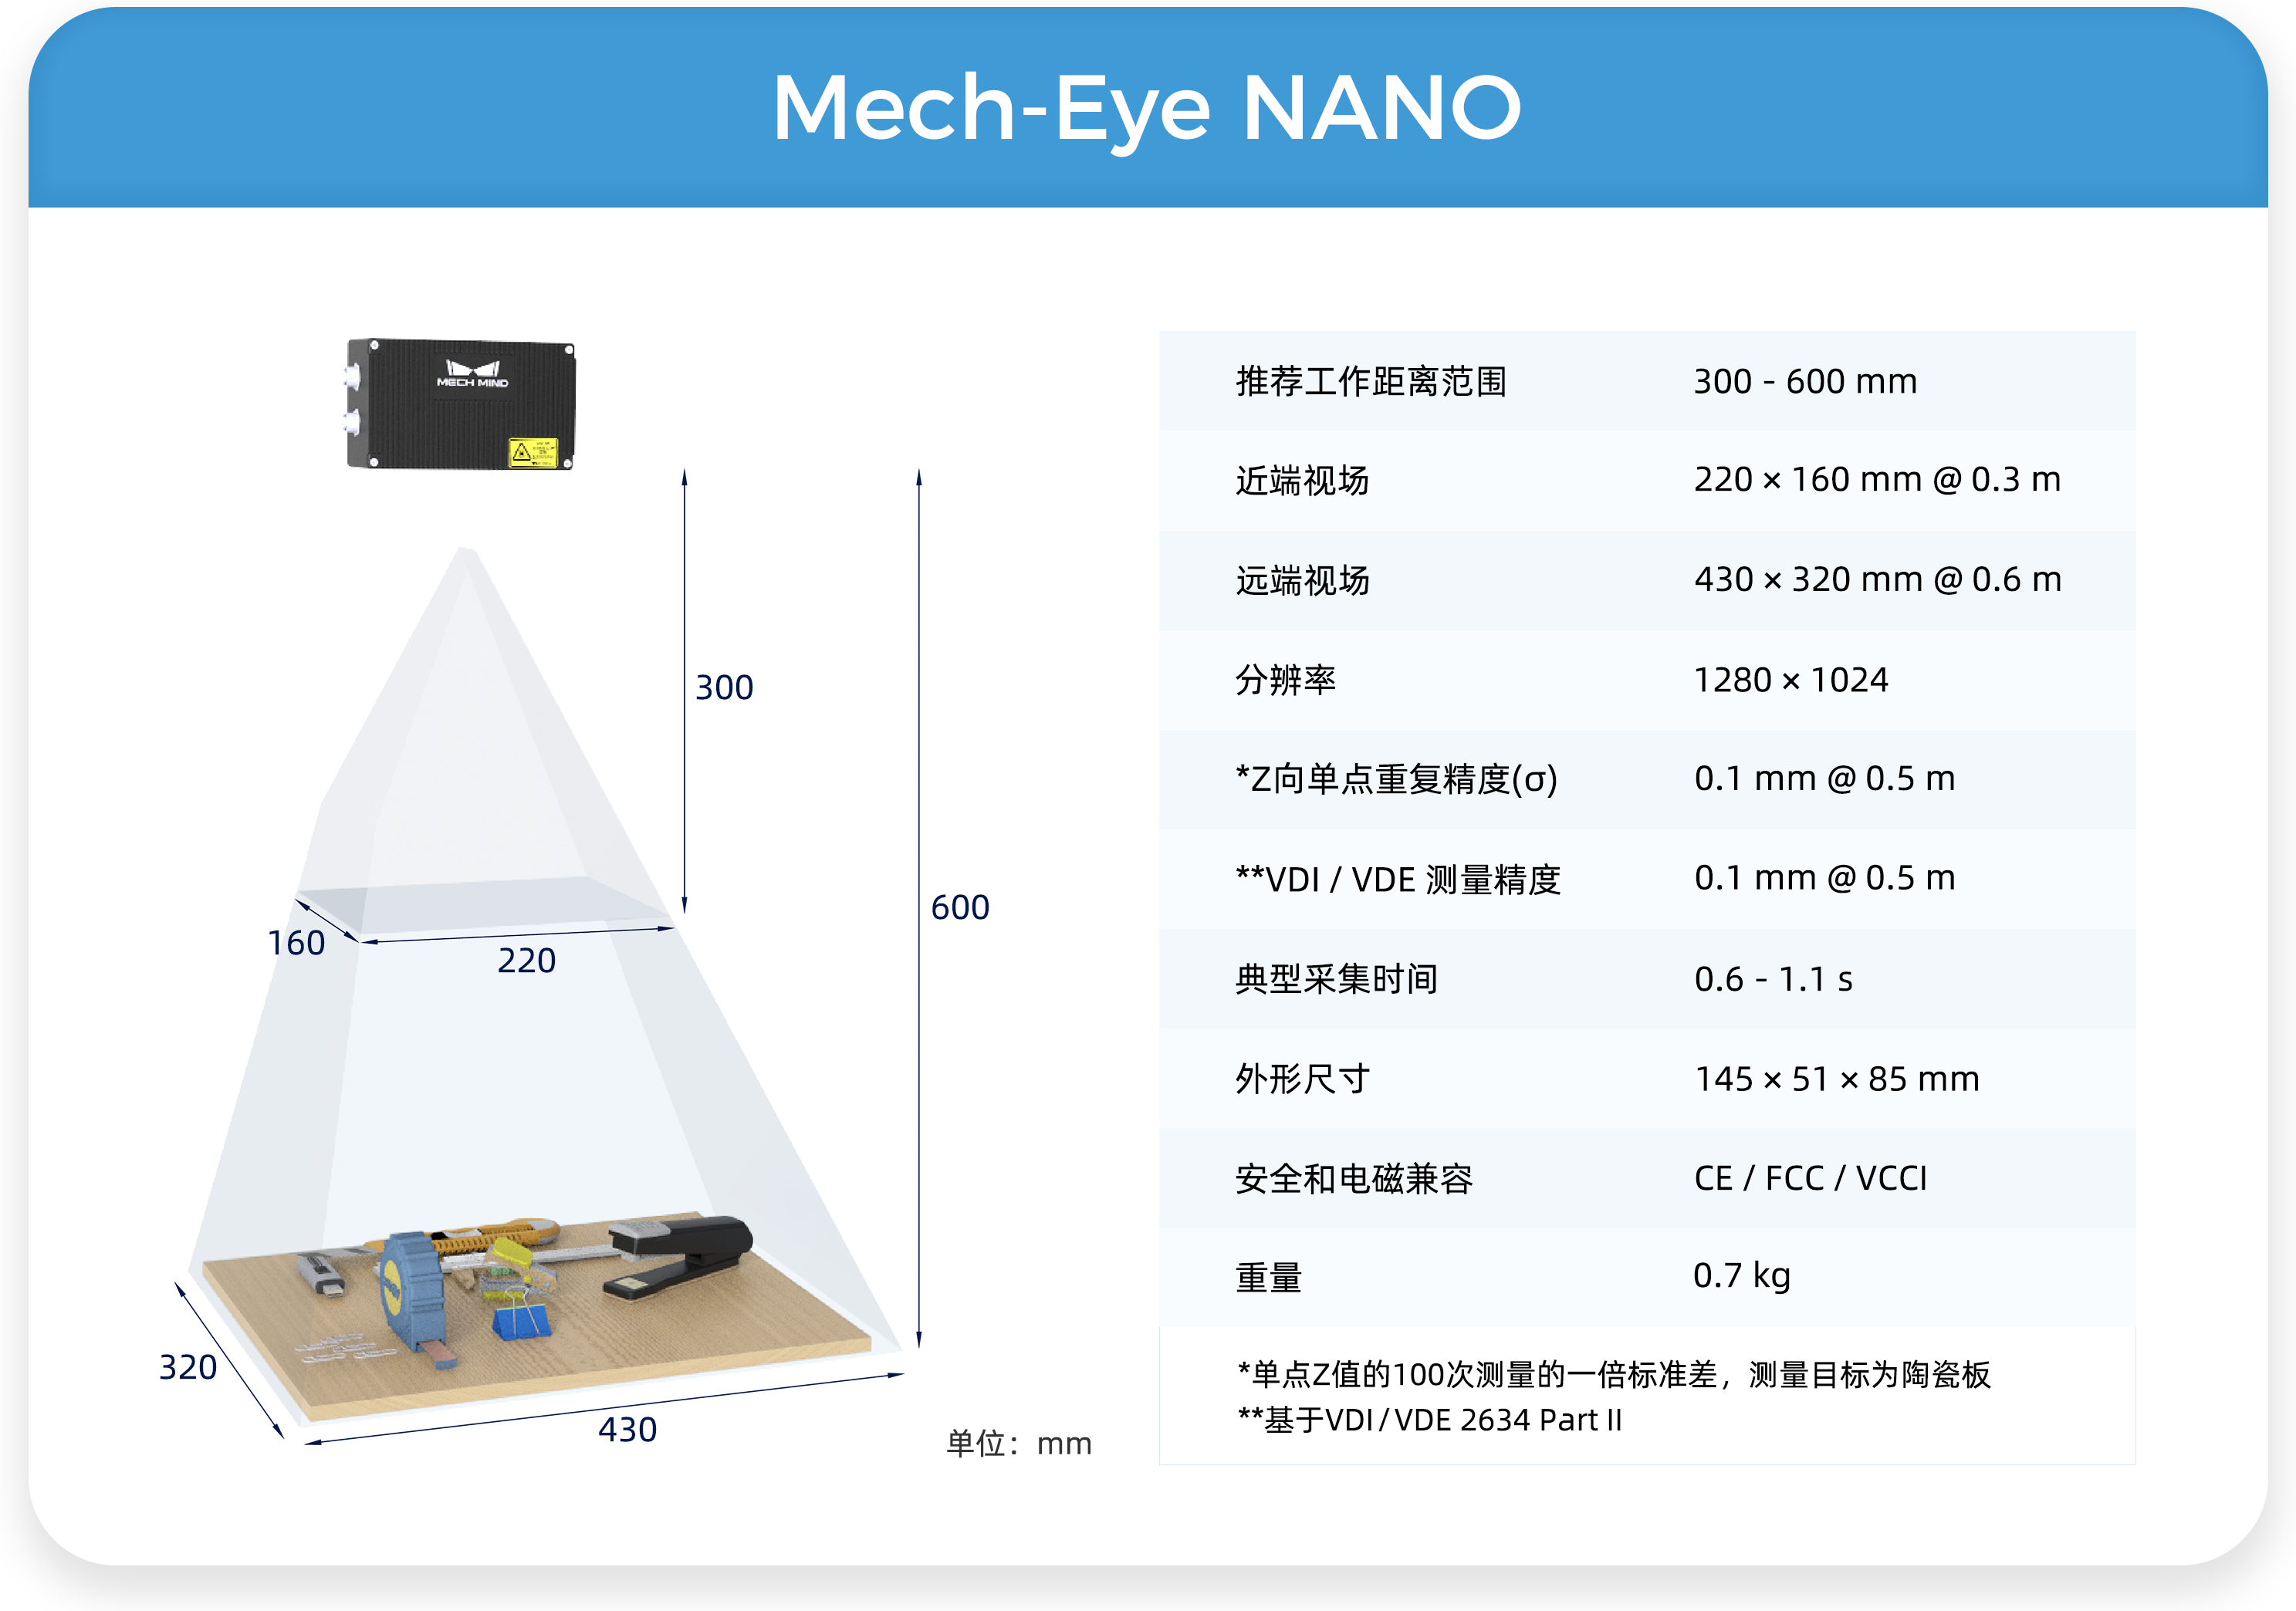 远/中/近距离Mech-Eye工业级3D相机，满足汽车行业生产精度、视野、抗环境光多维需求